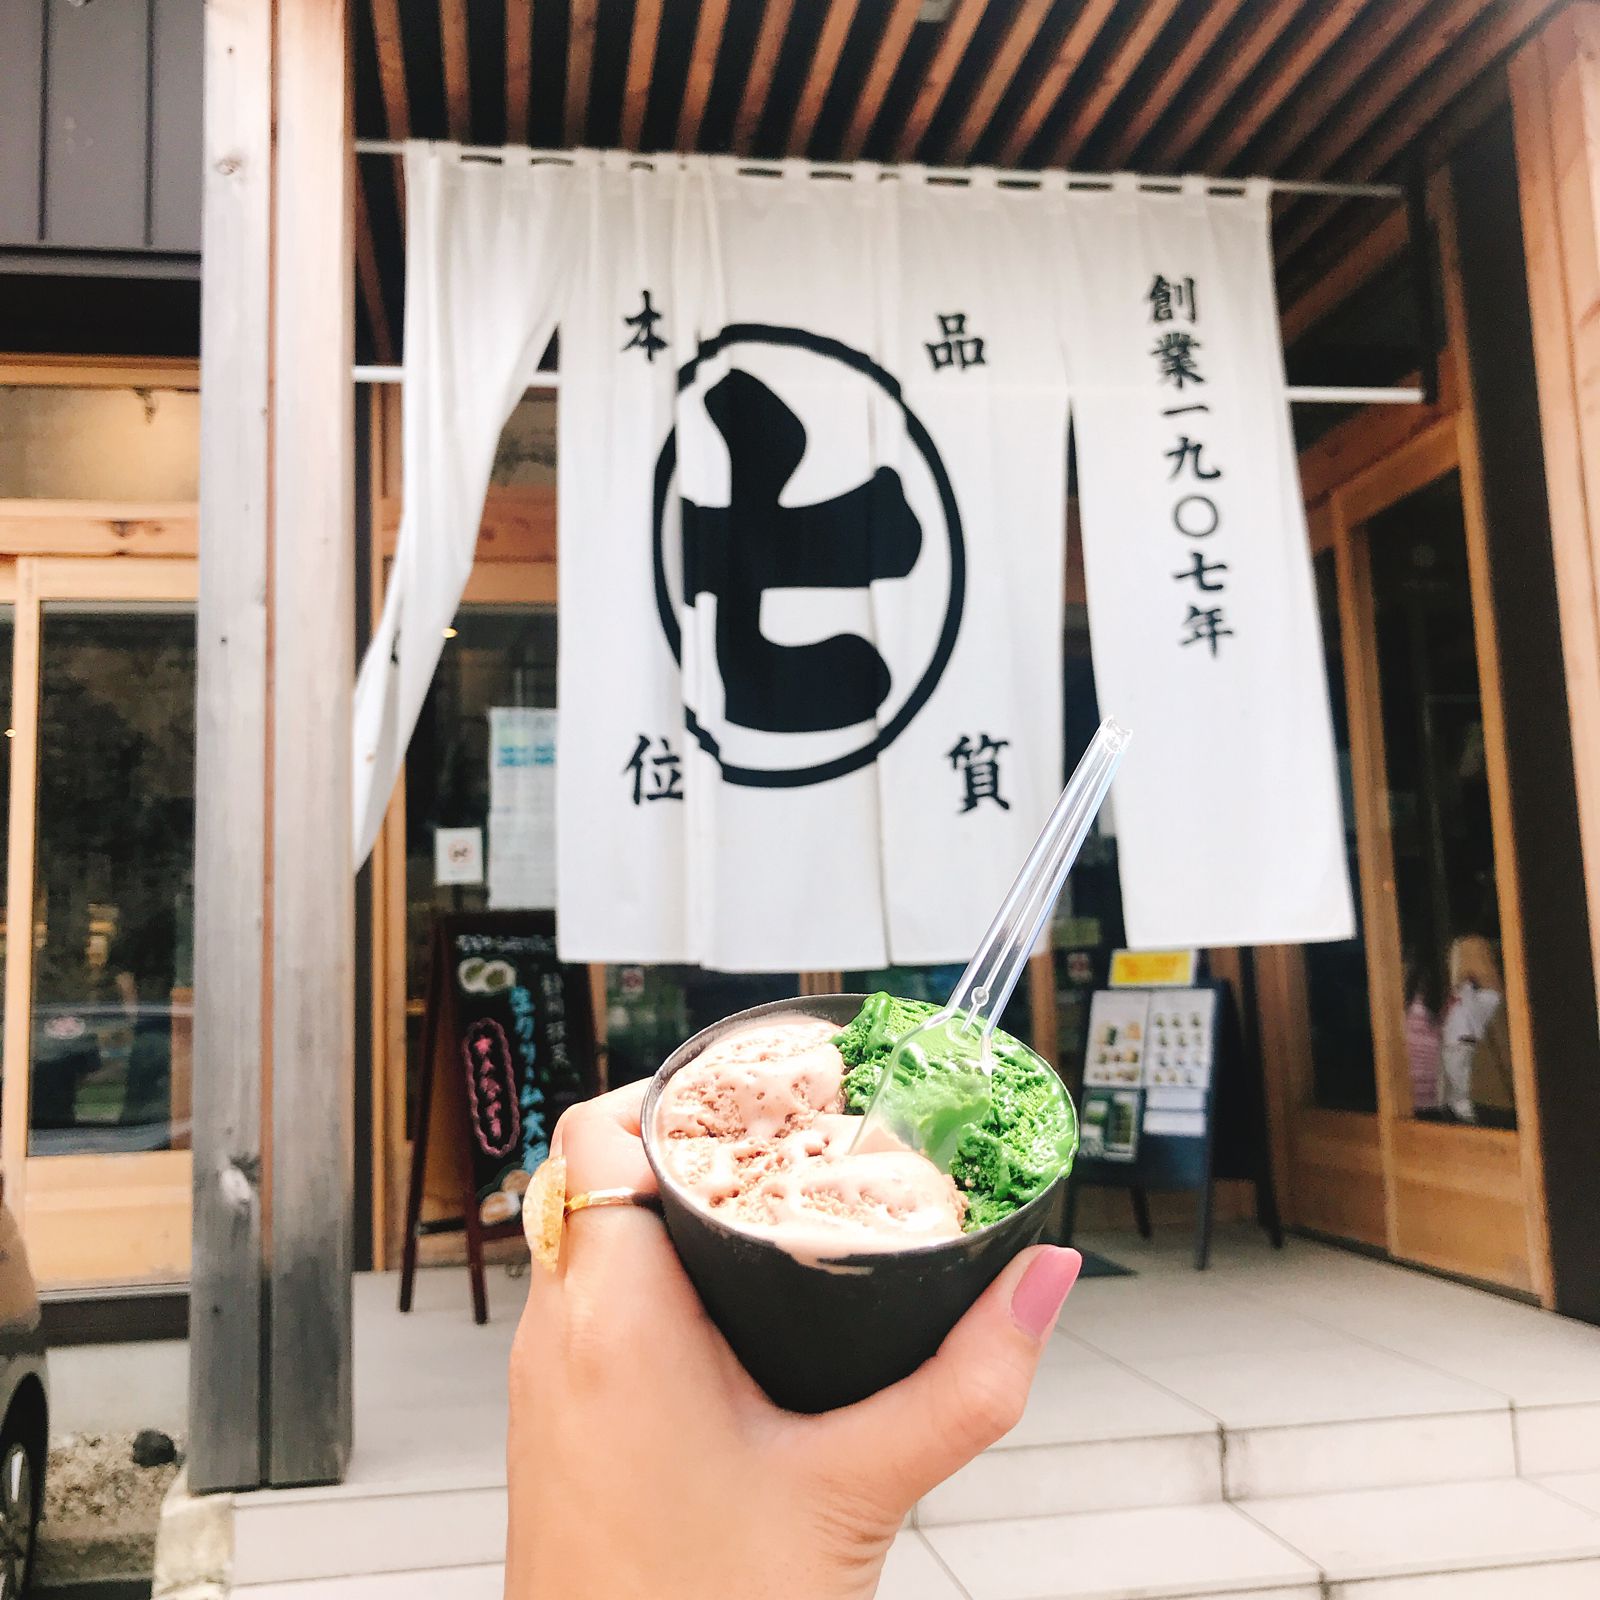 本場で食べたい 静岡 の絶品抹茶スイーツが楽しめるカフェ7選 Retrip リトリップ